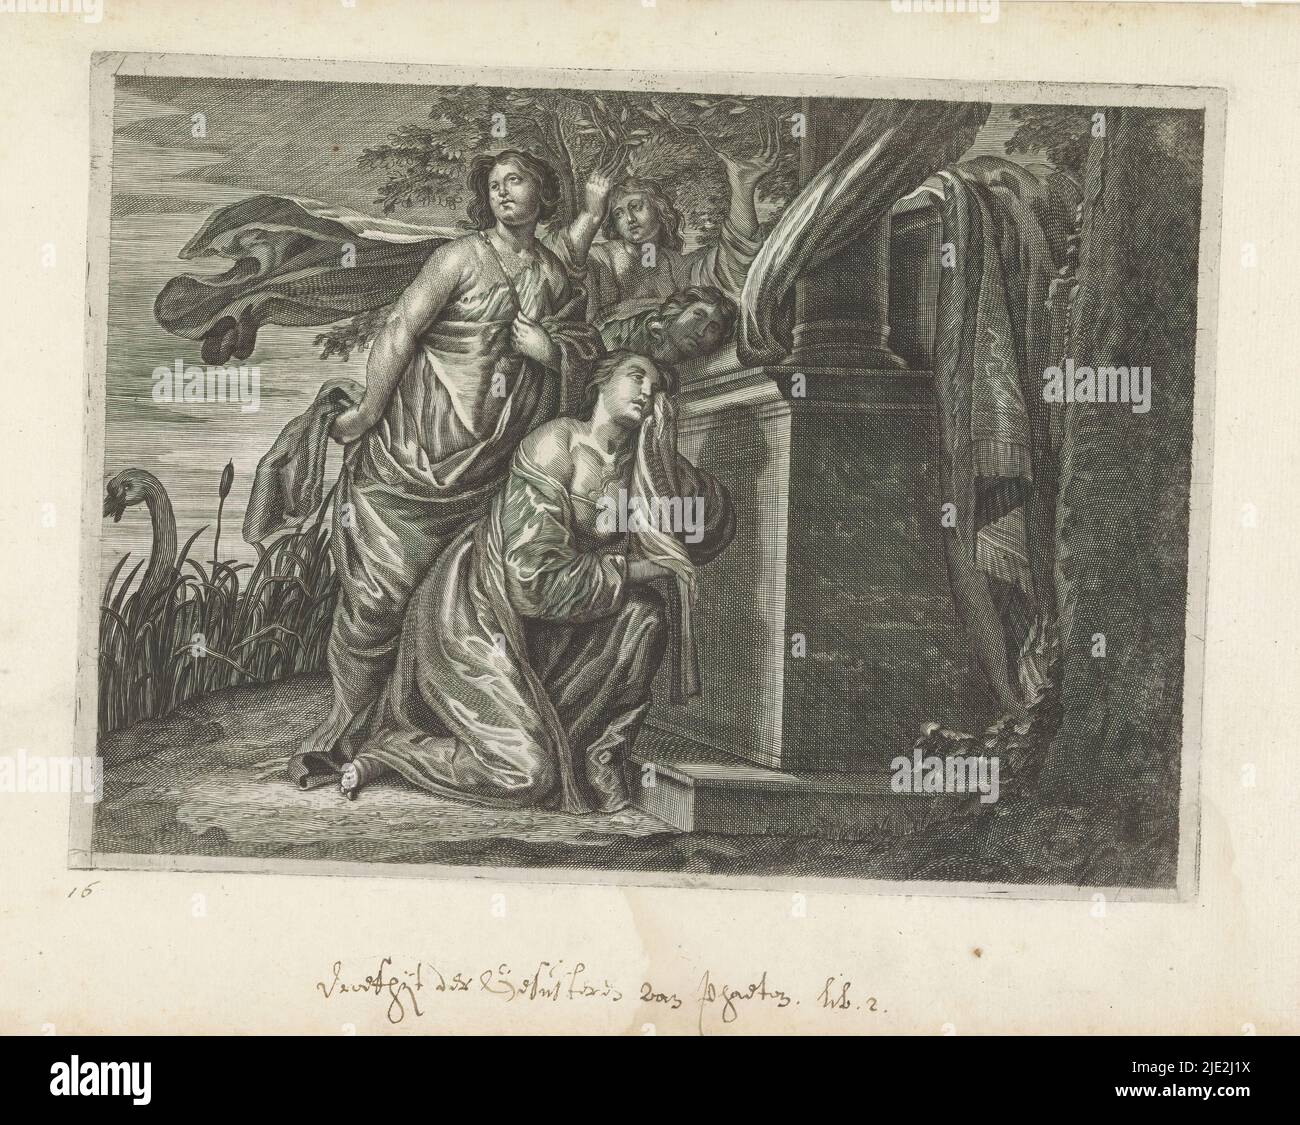 Phaëthon Schwestern trauern um seinen Tod, Metamorphosen von Ovid (Serientitel), Phaëthon Mutter Clymene kniet weinend nahe einer Gedenkstätte. Im Hintergrund verwandelt sich eine Schwester in eine Pappel und wird zur Heliade. Im Fluss schwimmt Cygnus, der sich in einen Schwan verwandelt hat., Druckerei: Crispijn van de Passe (II), Verlag: Crispijn van de Passe (II), (zugeschrieben), c. 1636 - 1670, Papier, Gravur, Höhe 162 mm × Breite 224 mm Stockfoto